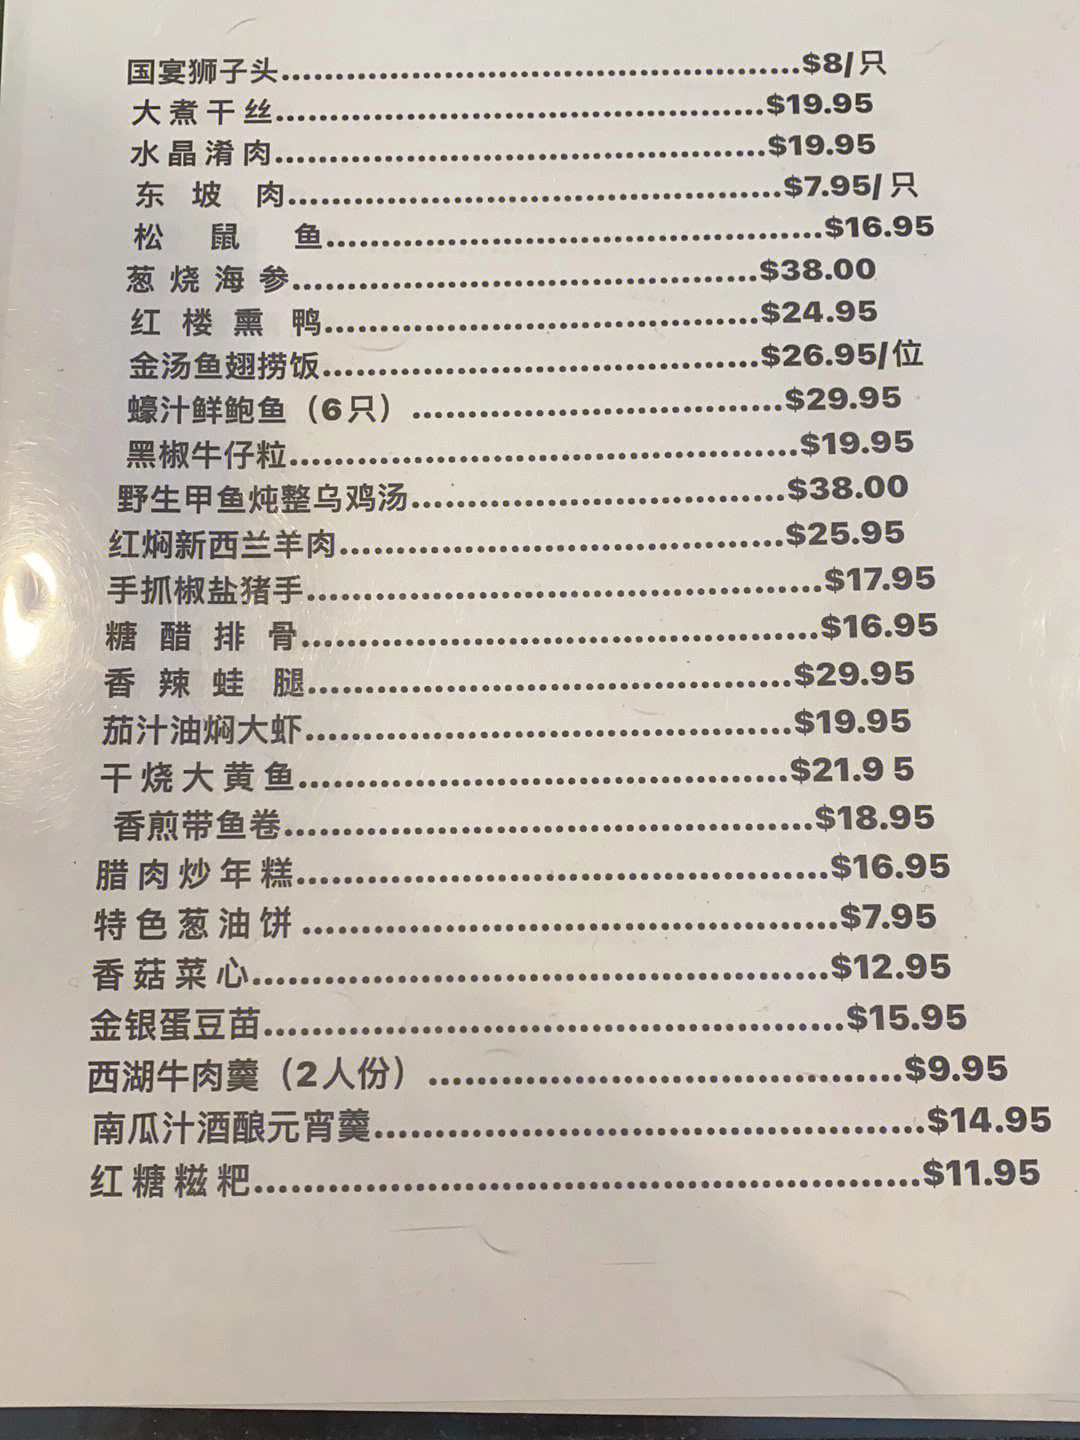 江苏大厦淮扬餐厅菜单图片